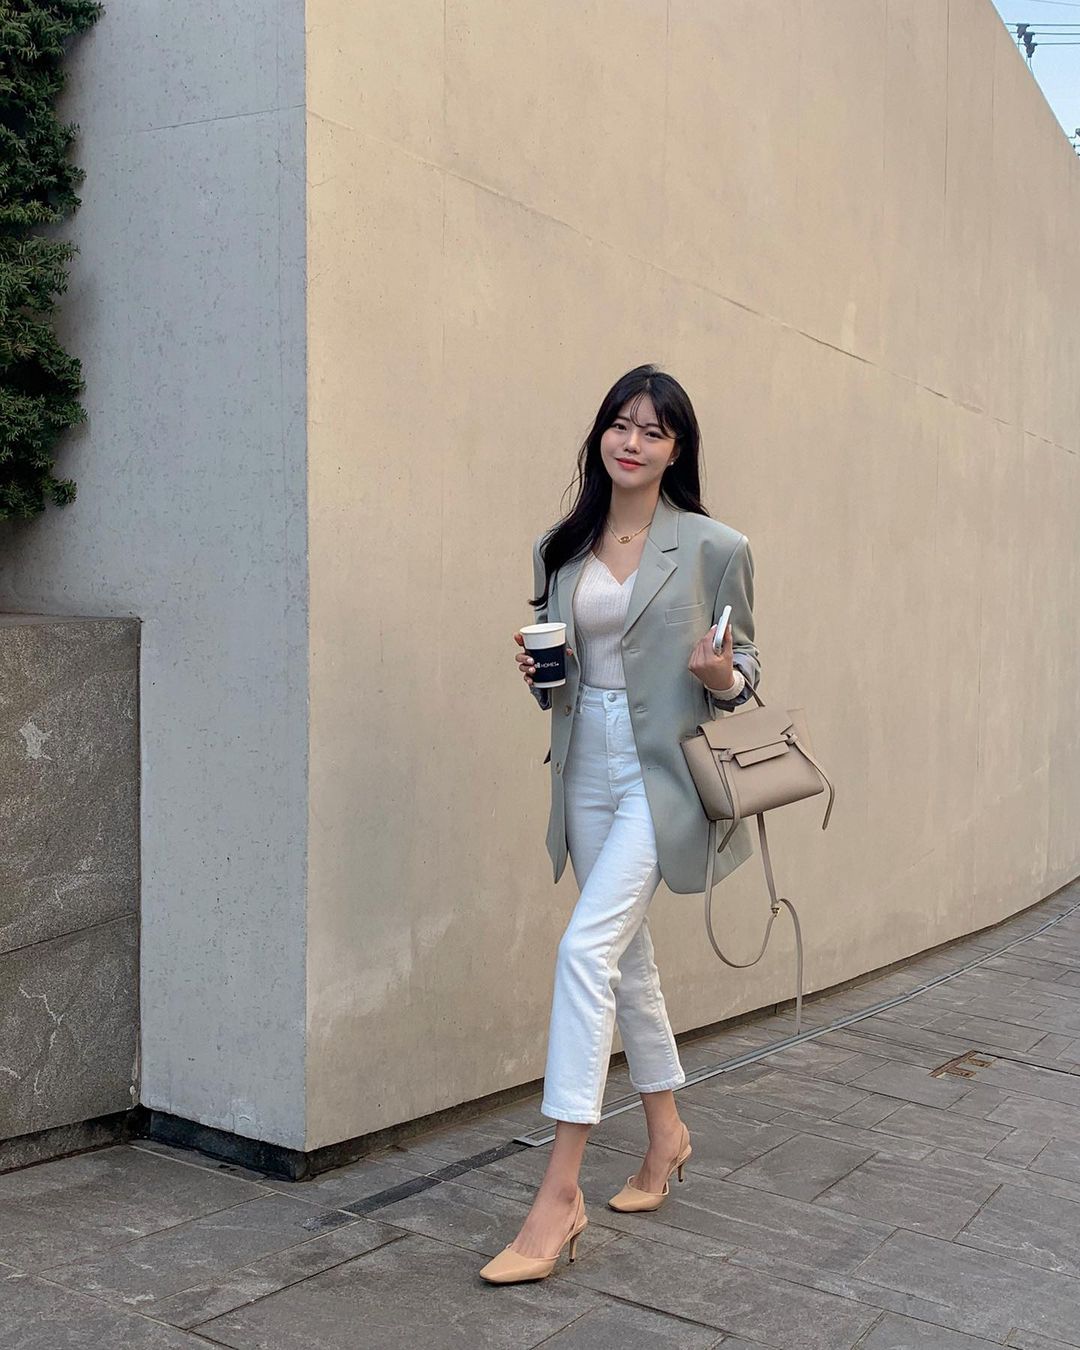 Học nàng blogger Hàn cách diện jeans “đỉnh của chóp”: Vừa hack dáng vừa thanh lịch để đến sở làm - Ảnh 8